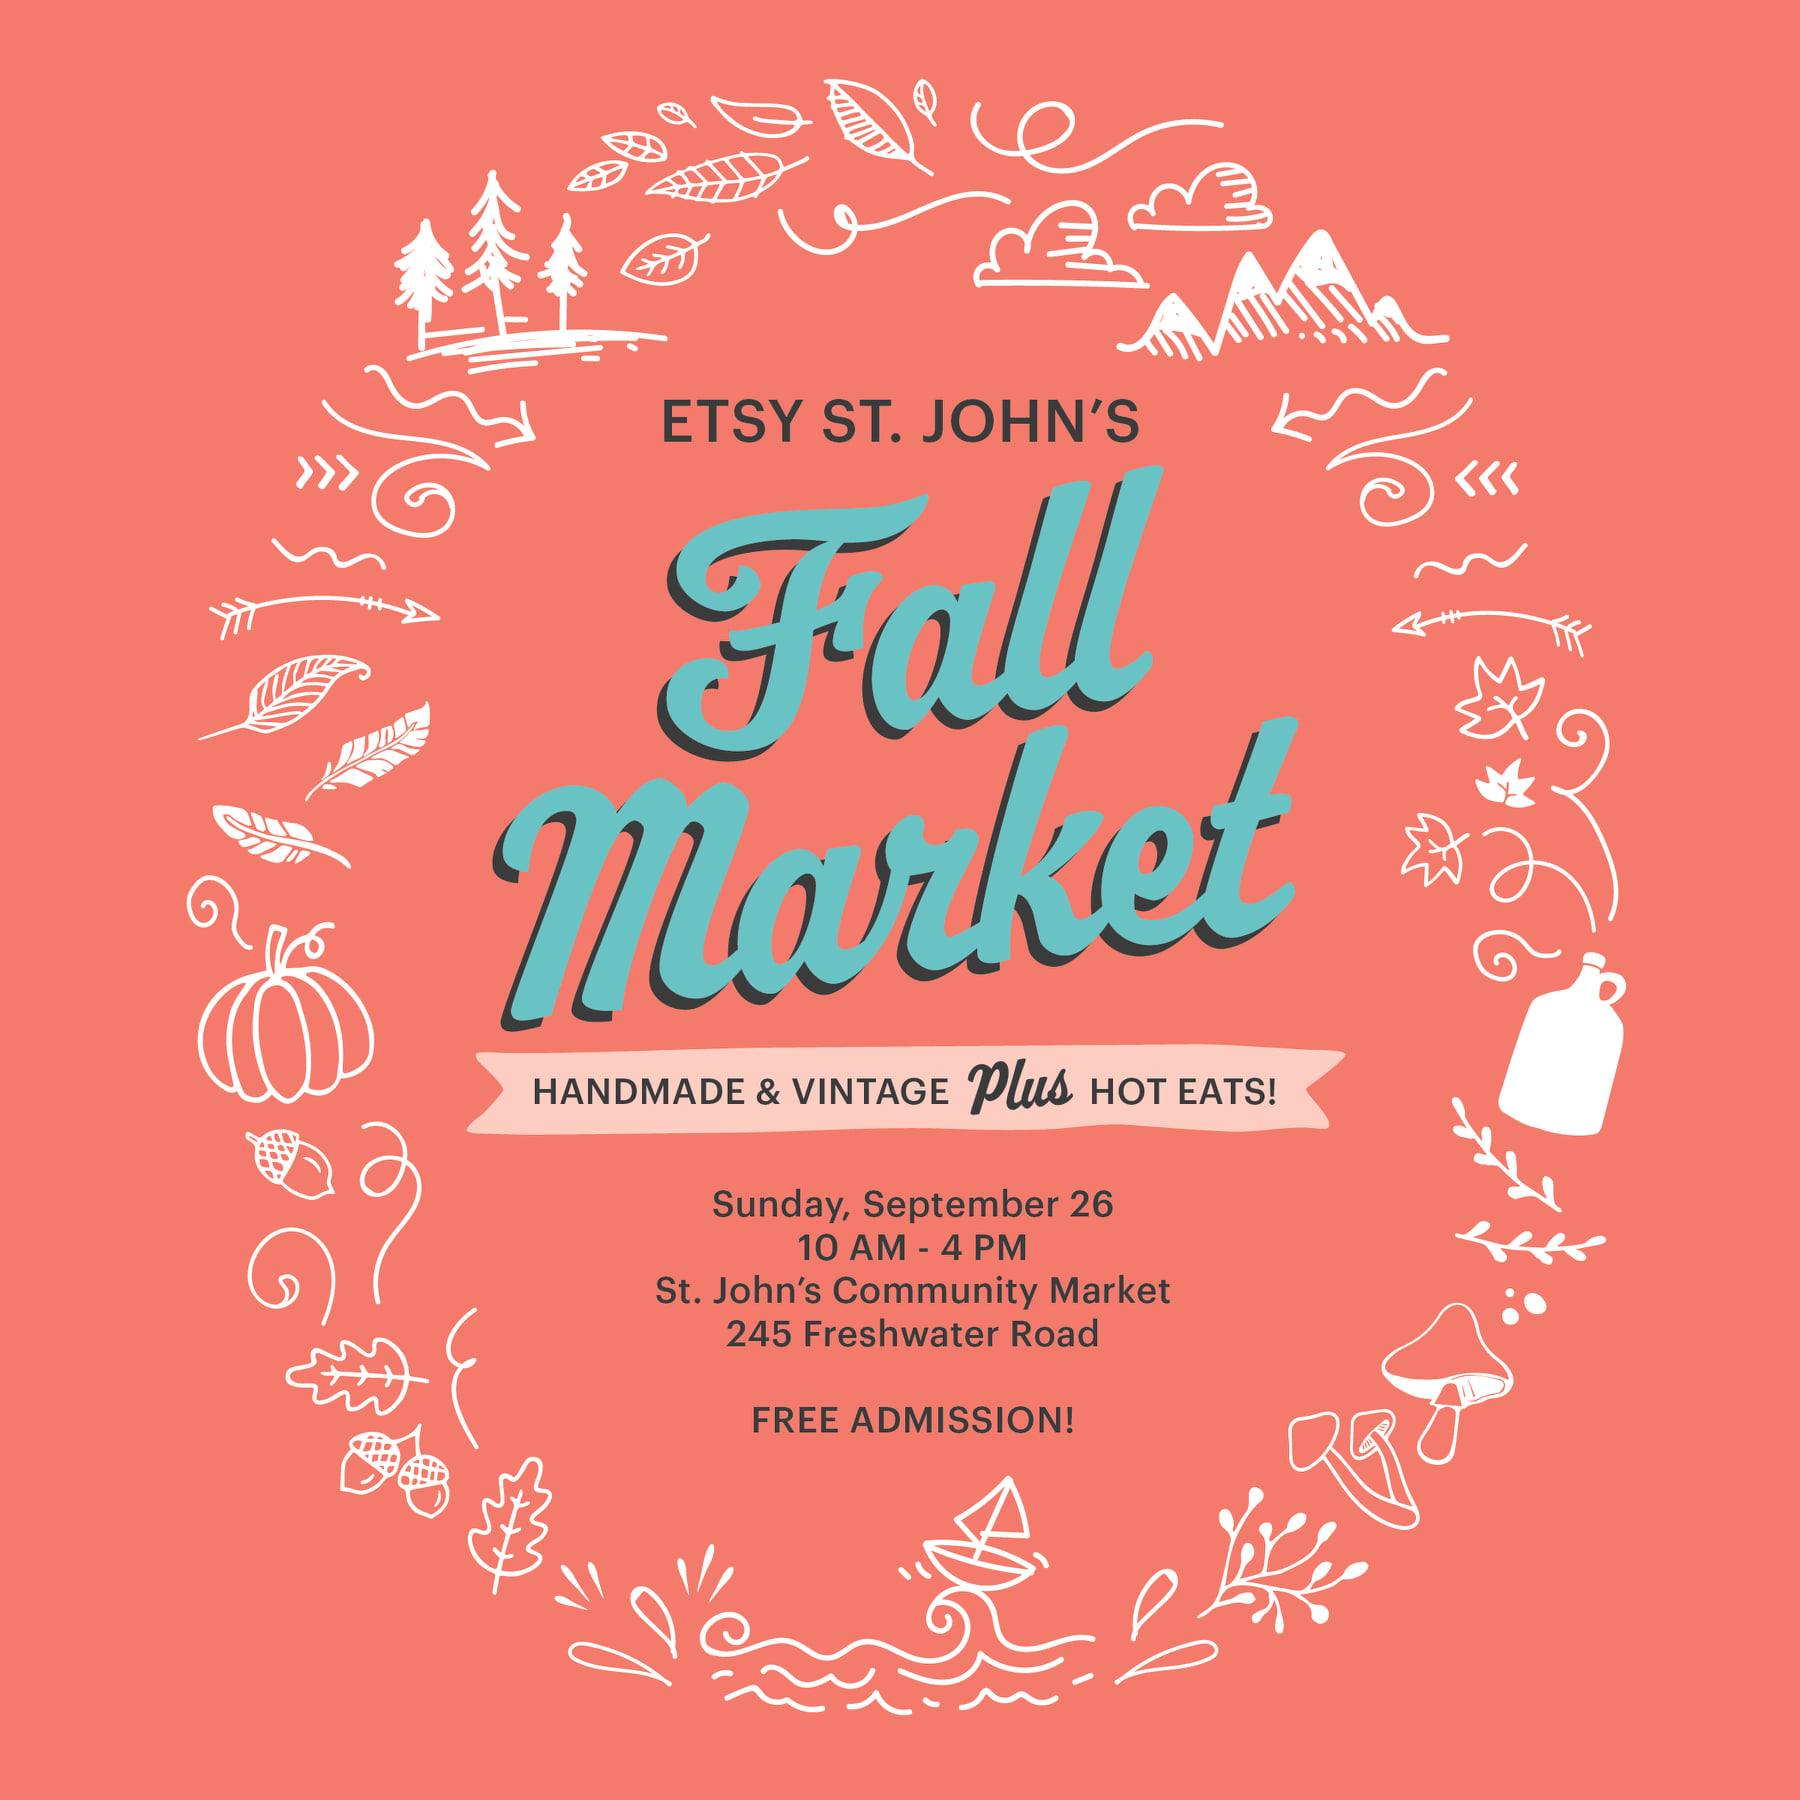 Fall Market Etsy St. John's